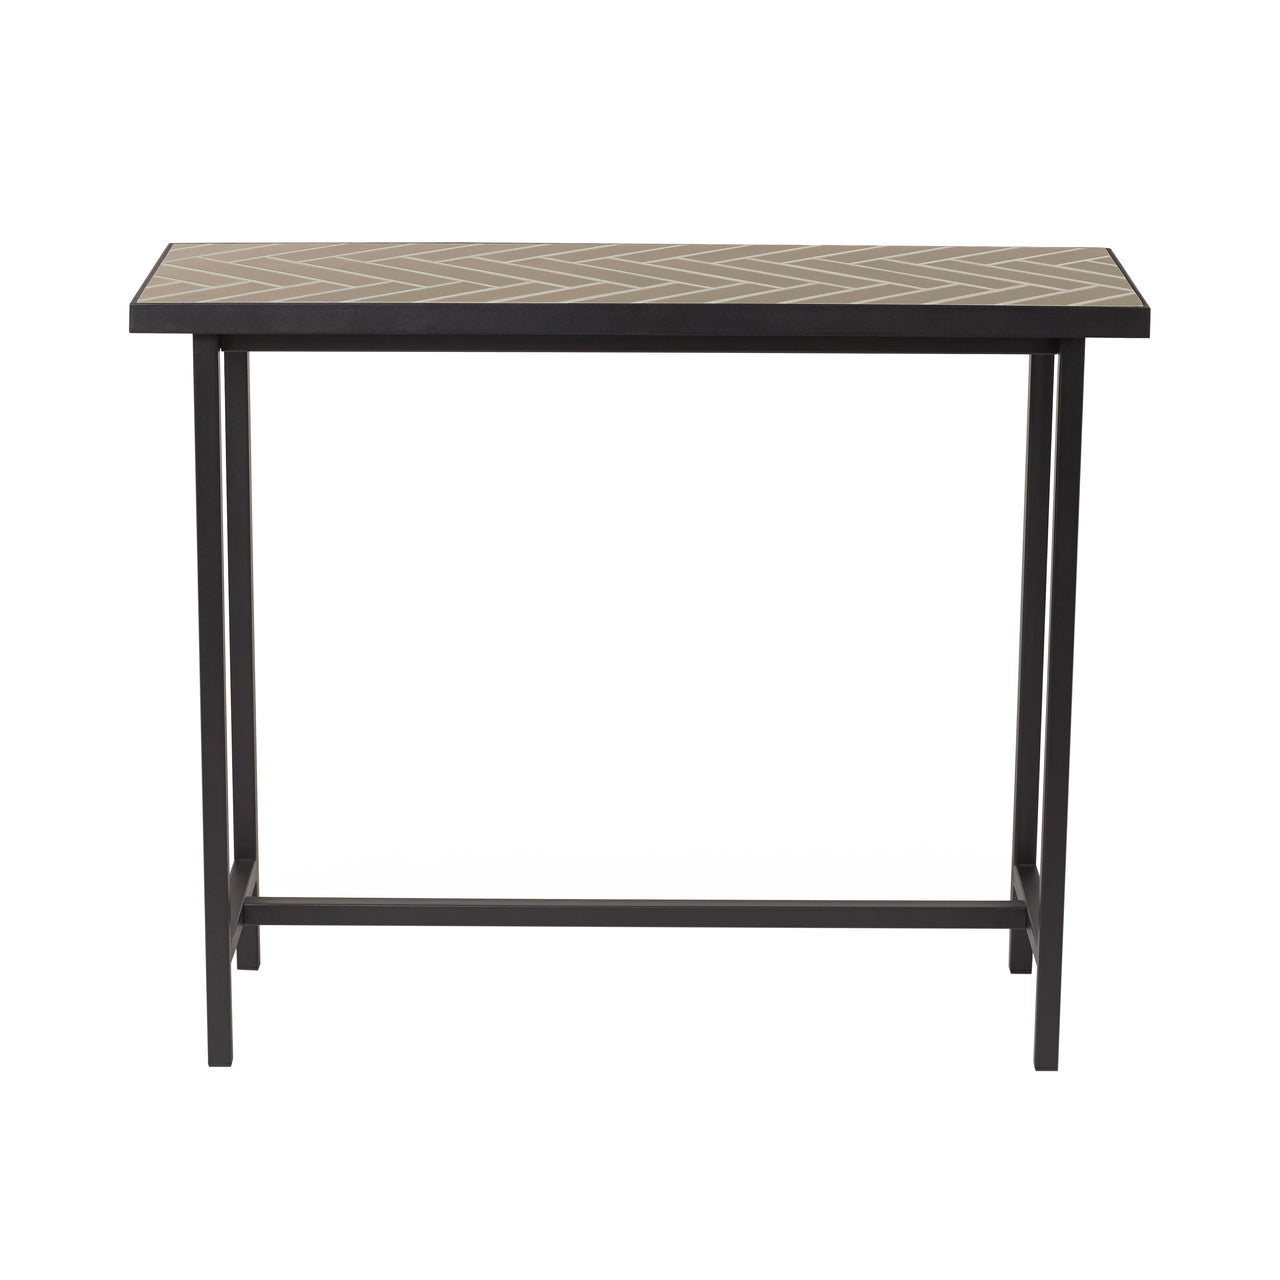 Herringbone Console Table: Warm Concrete